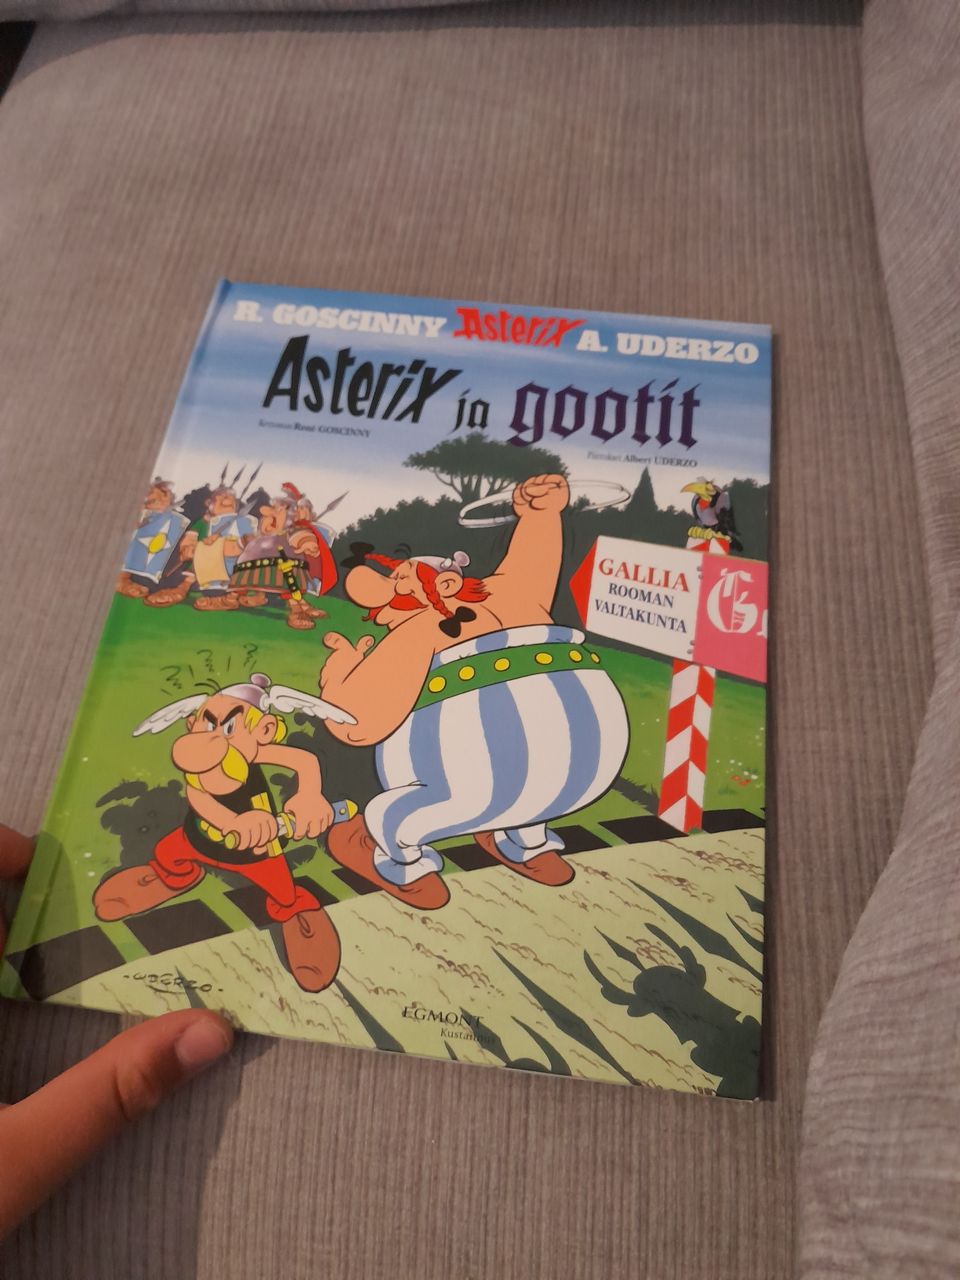 Asterix ja gootit kirja